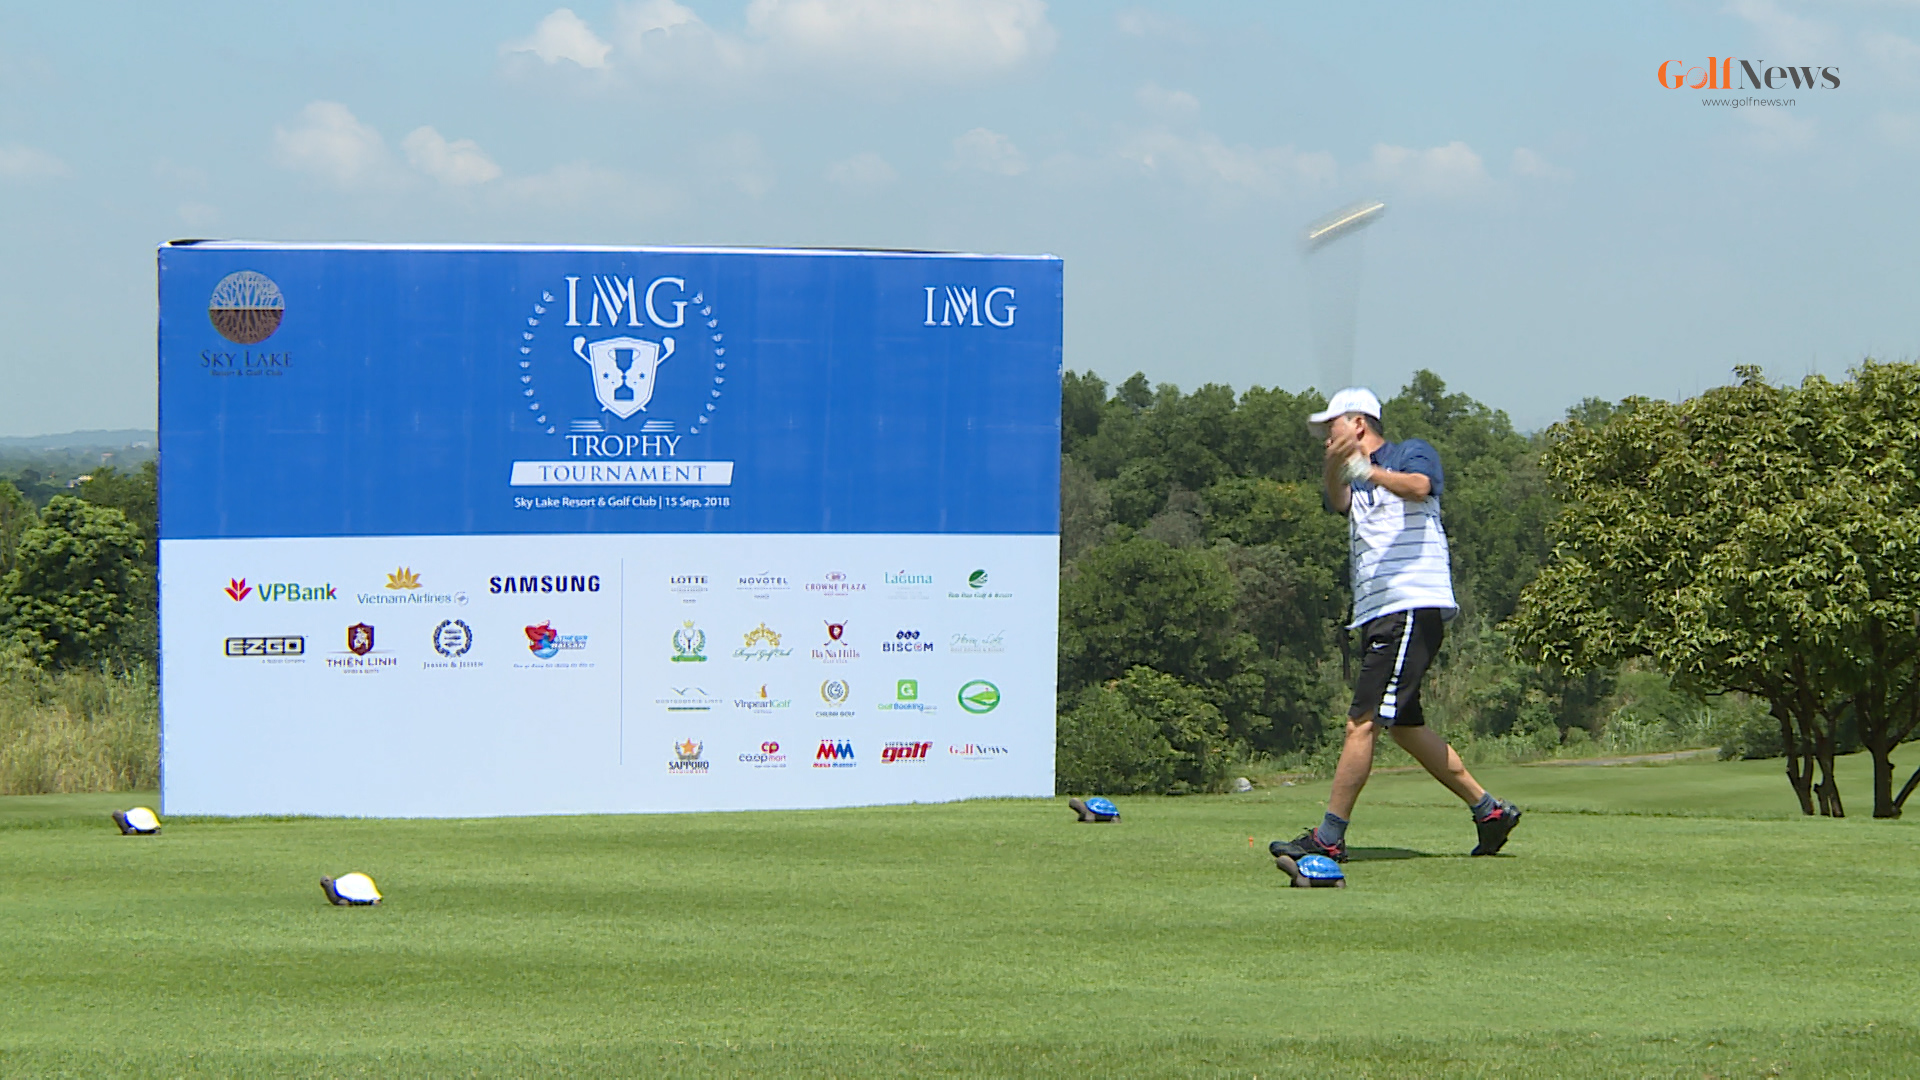 Giải đấu IMG Trophy Tournament 2018 thu hút hơn 150 golfer tham dự